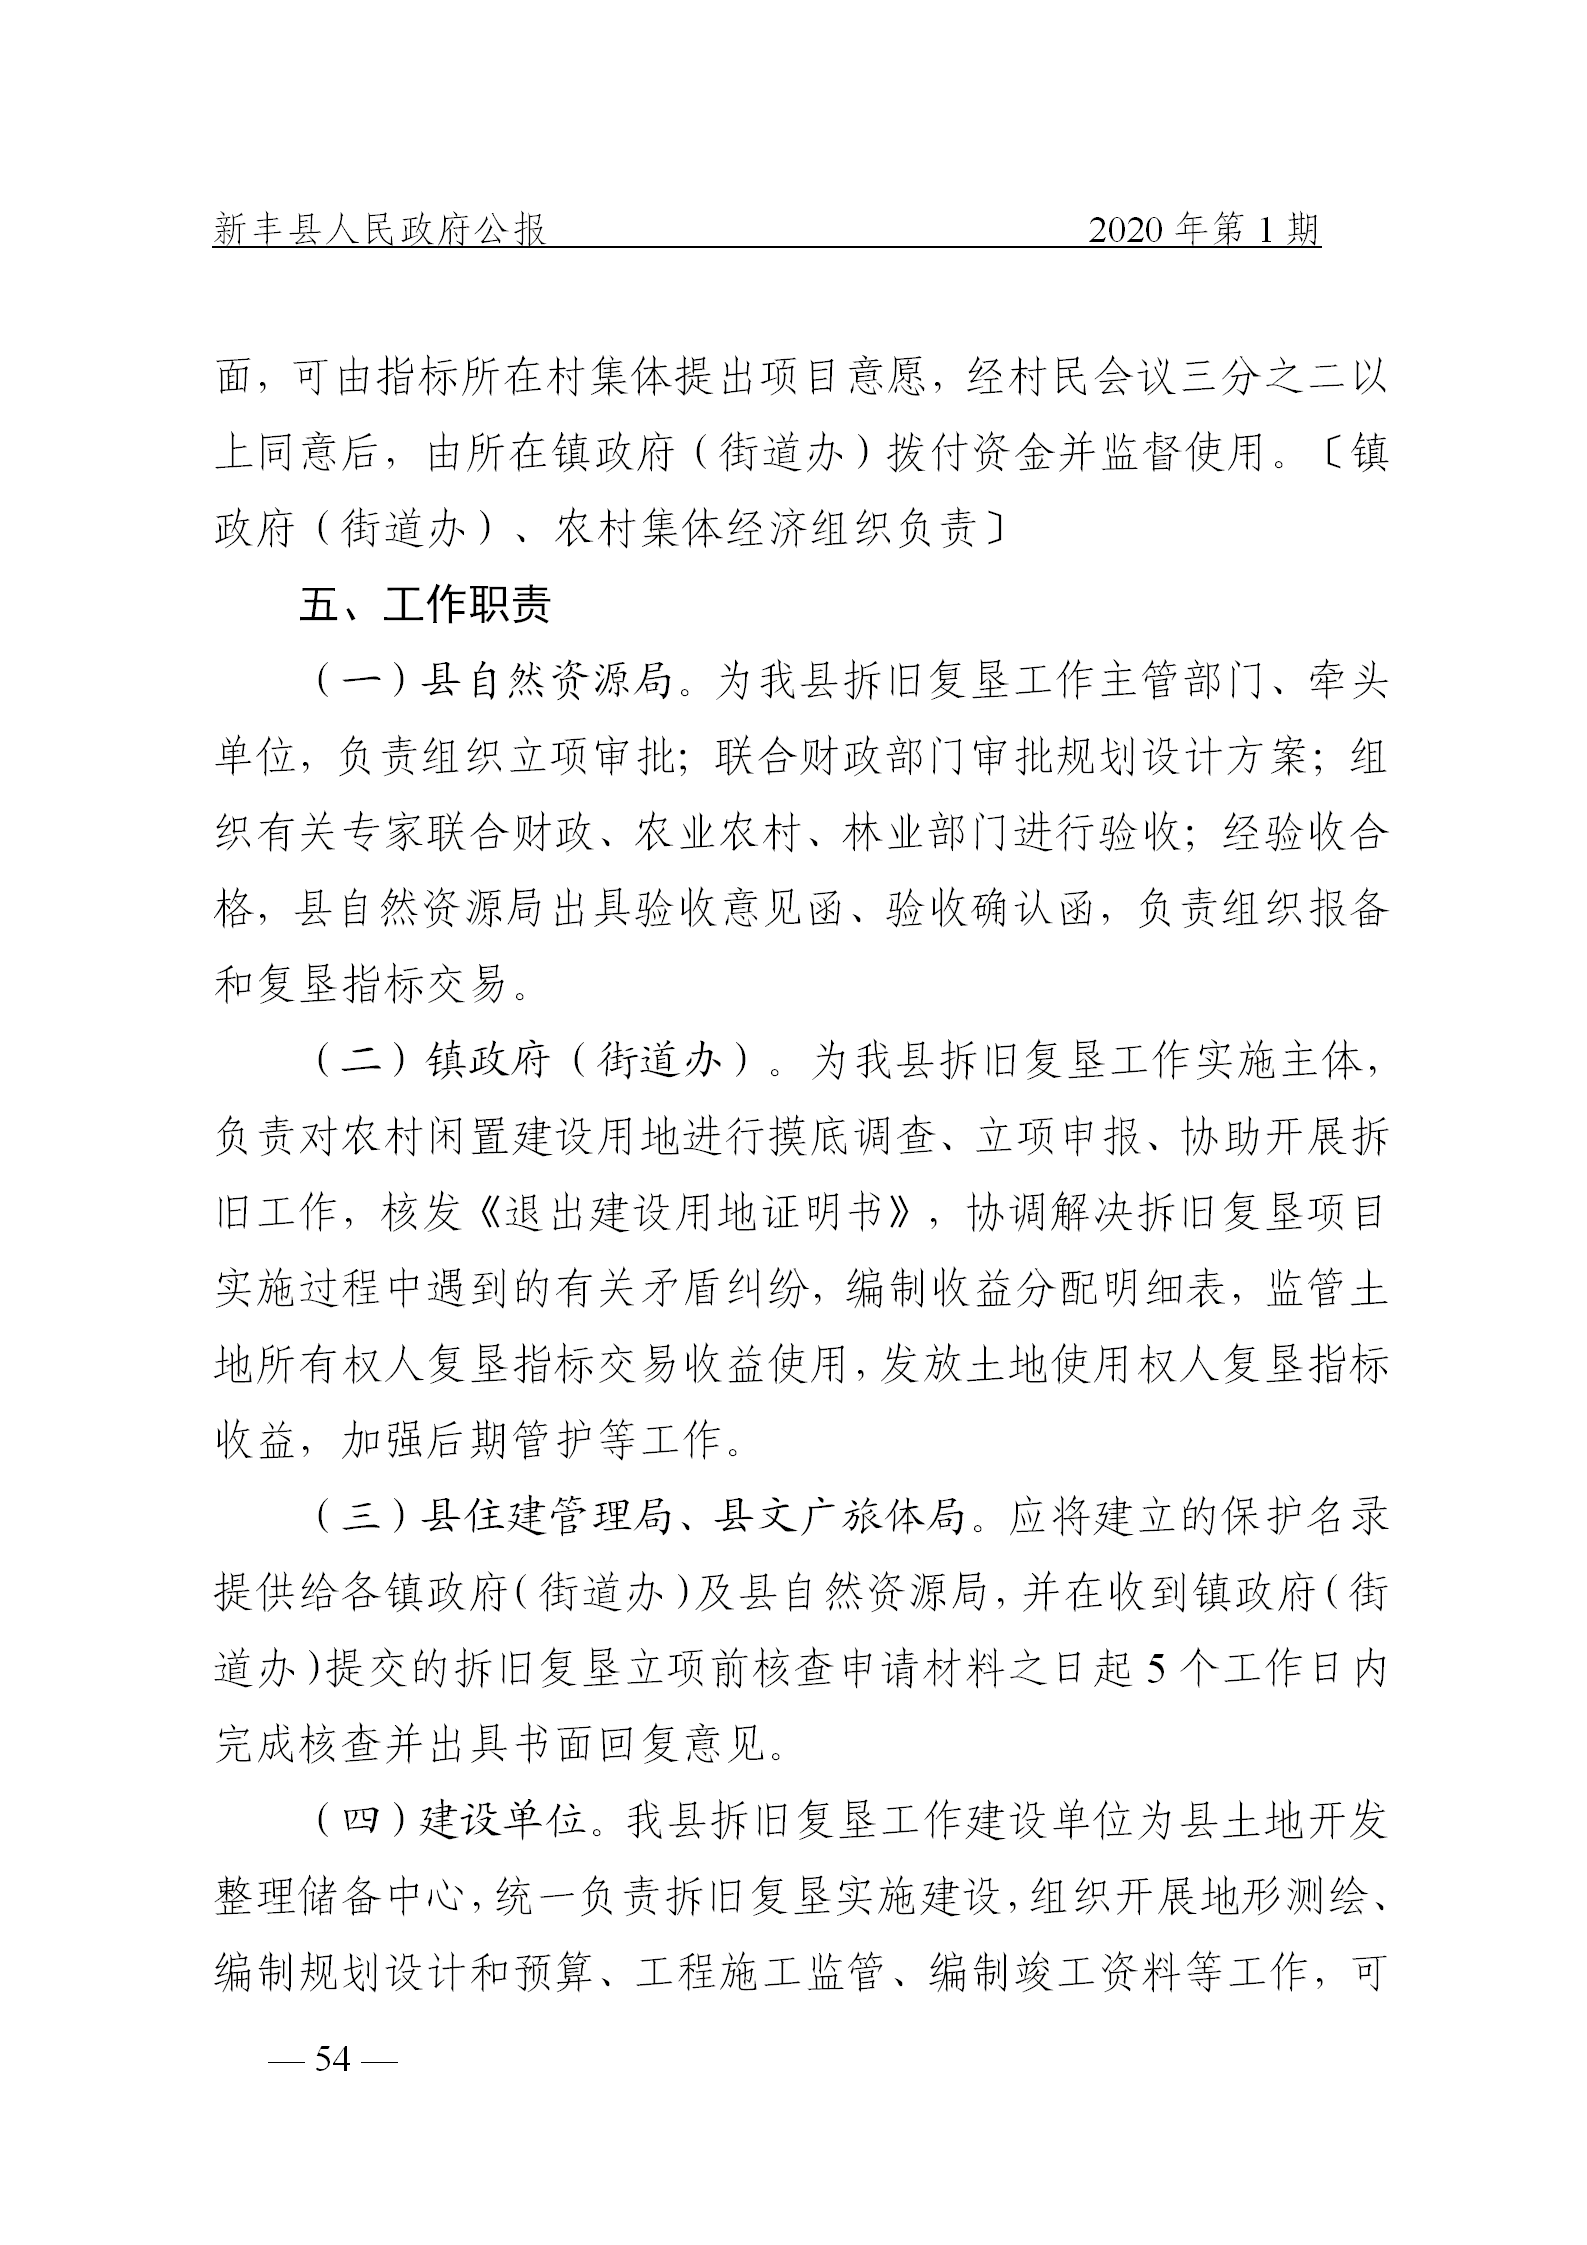 《新丰县人民政府公报》2020年第1期(1)_54.png